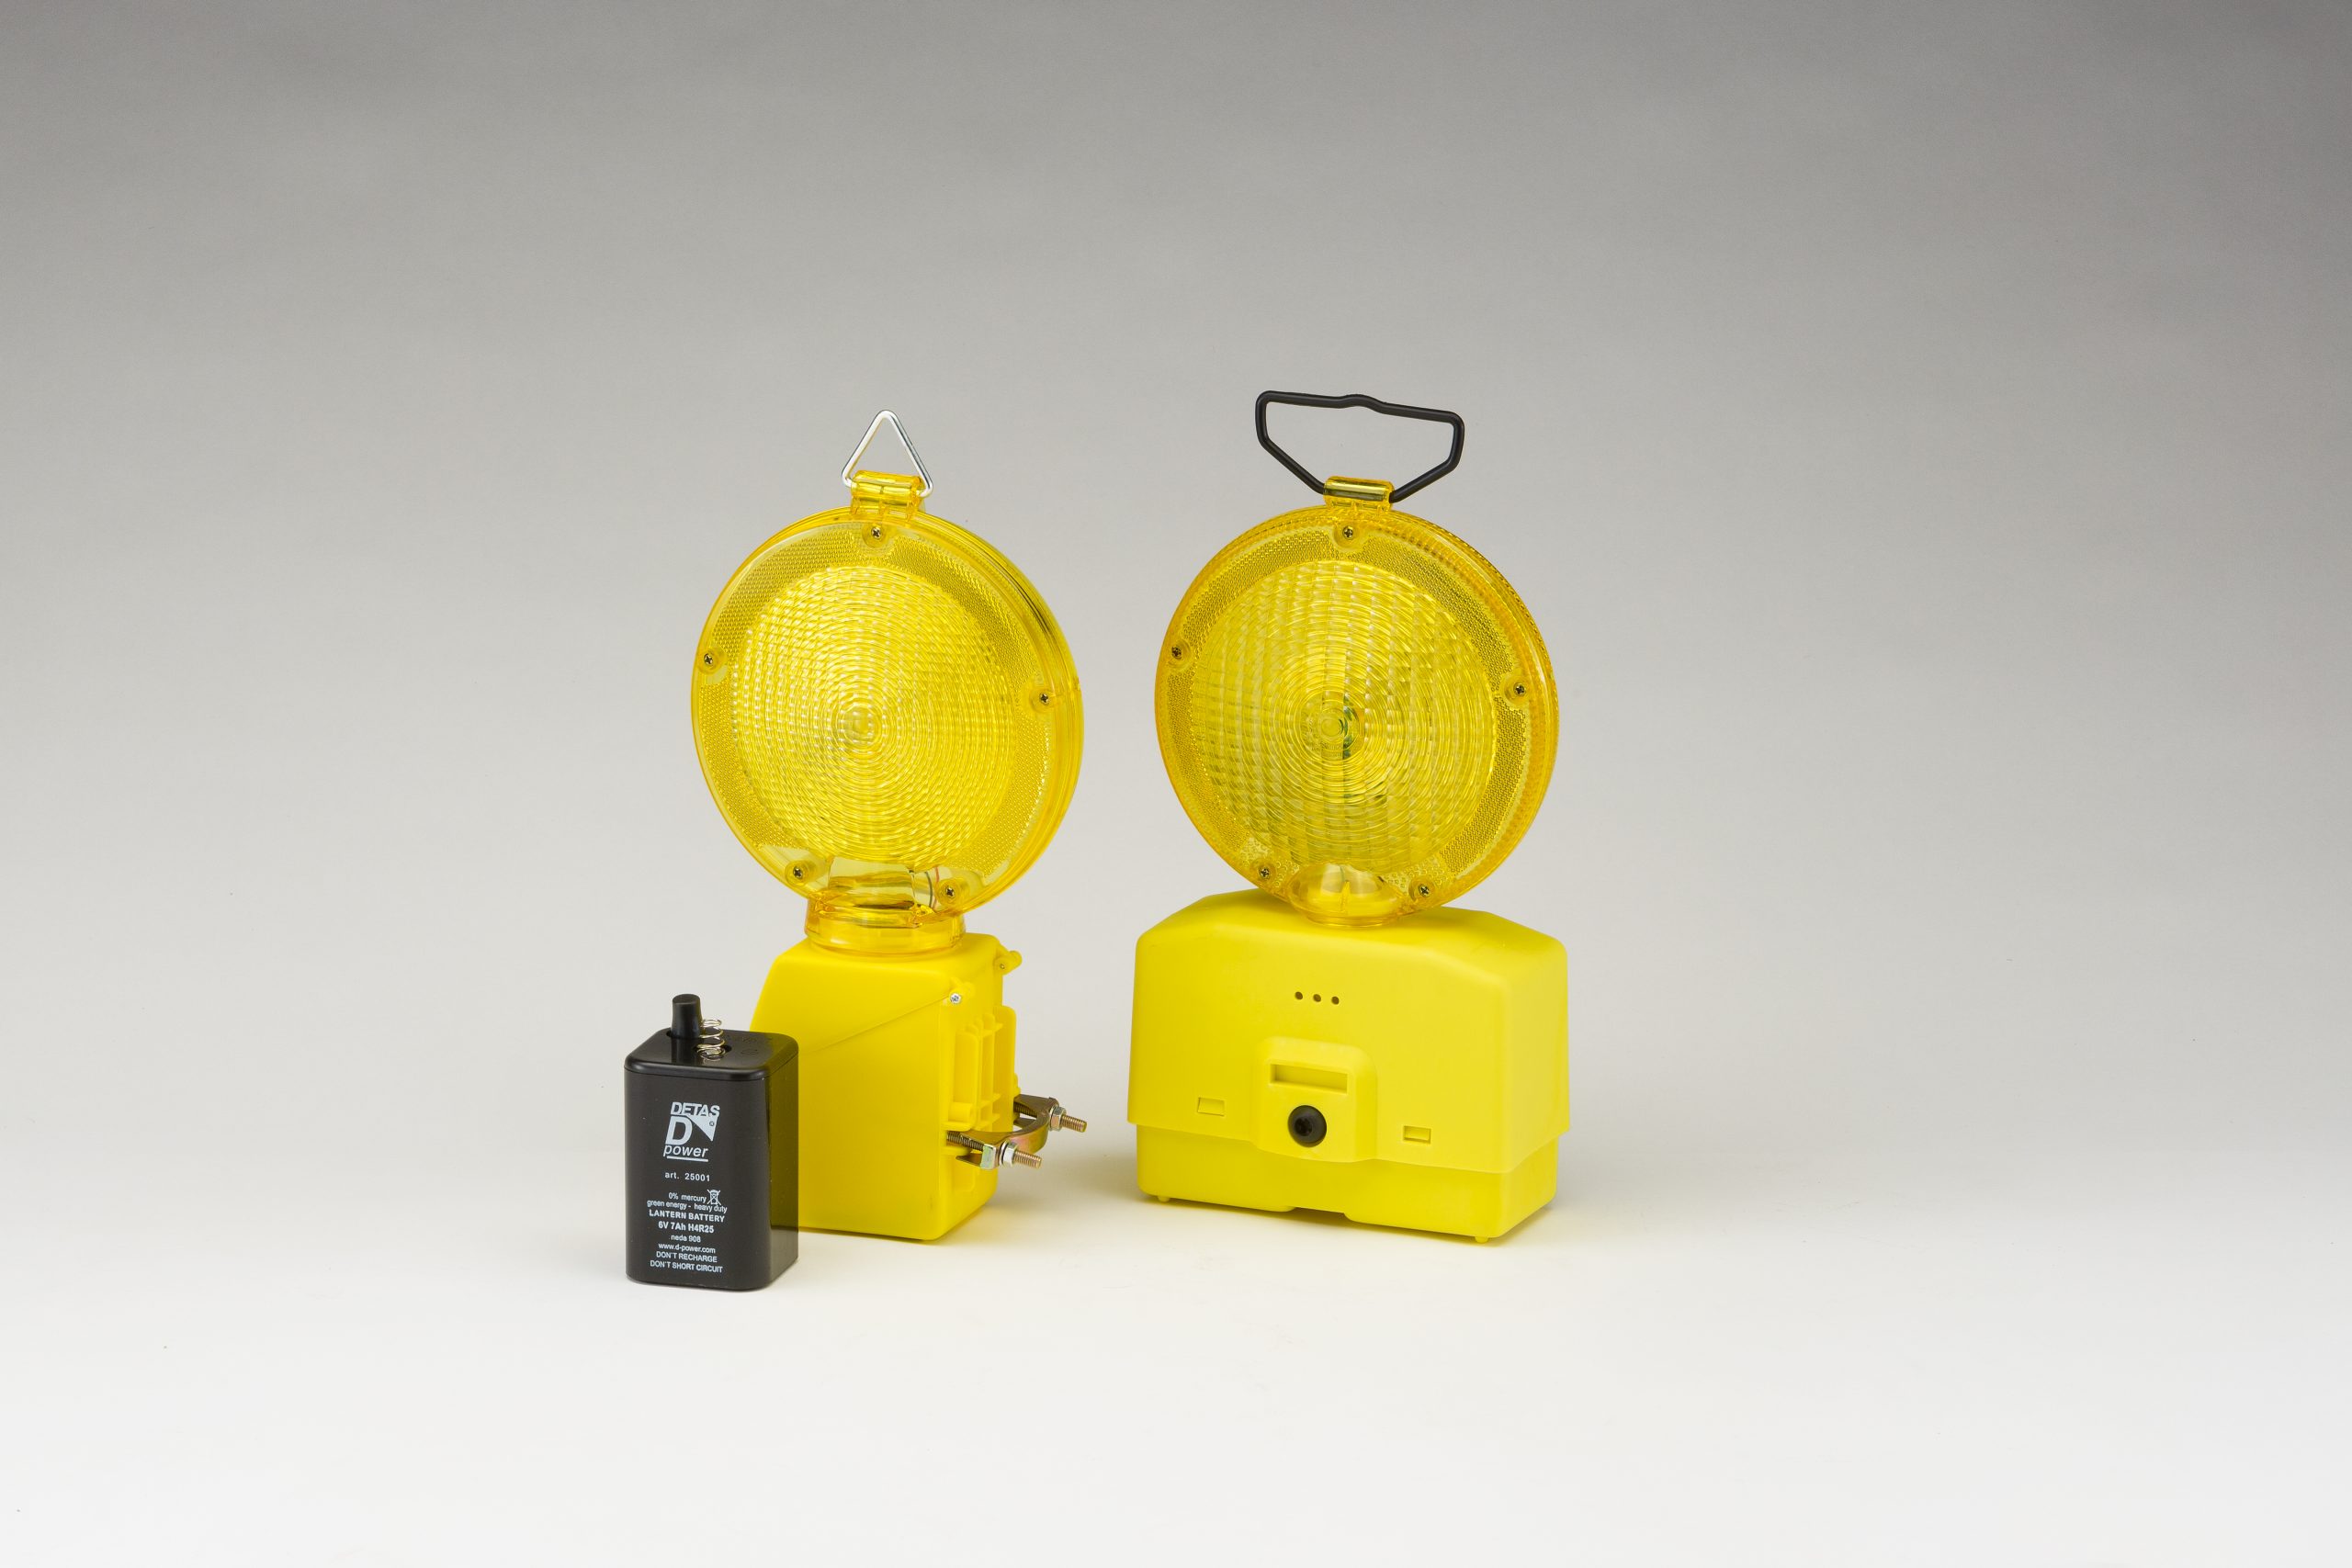 Baterias para lâmpadas de canteiros de obras